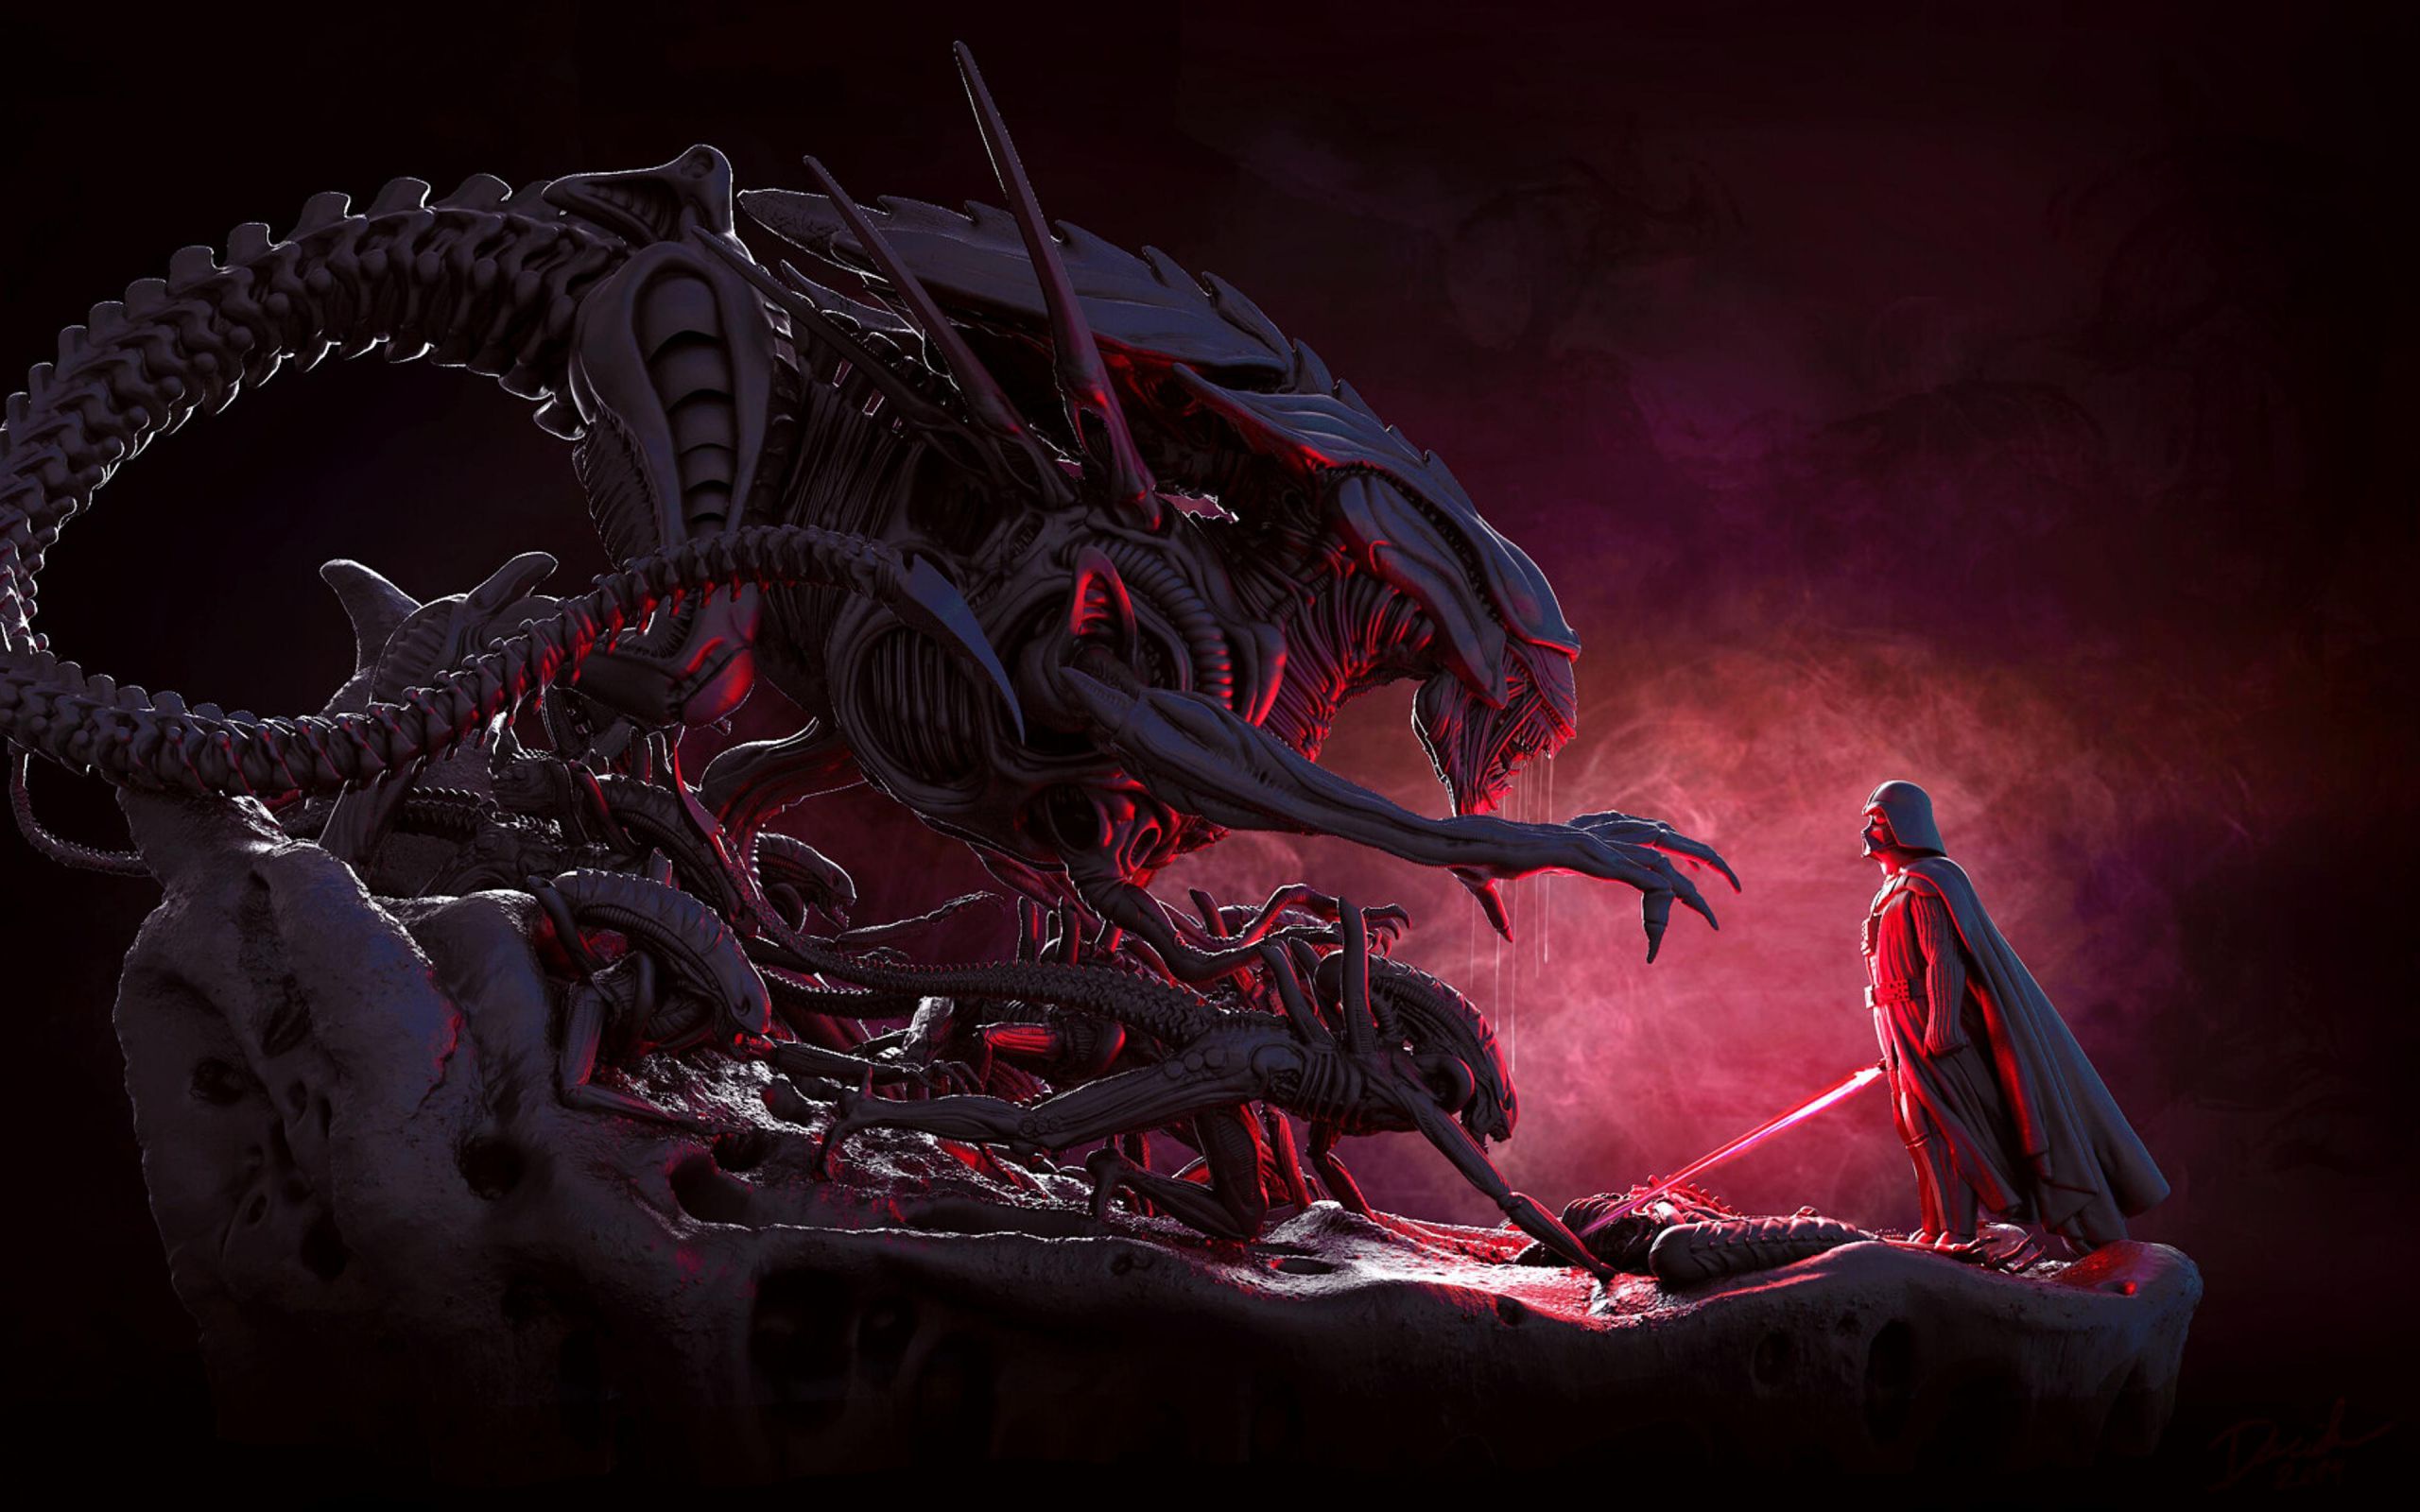 Darth Vader Alien Movie Star Wars Lightsaber Dark Fantasy Art Artwork Creature 2560x1600